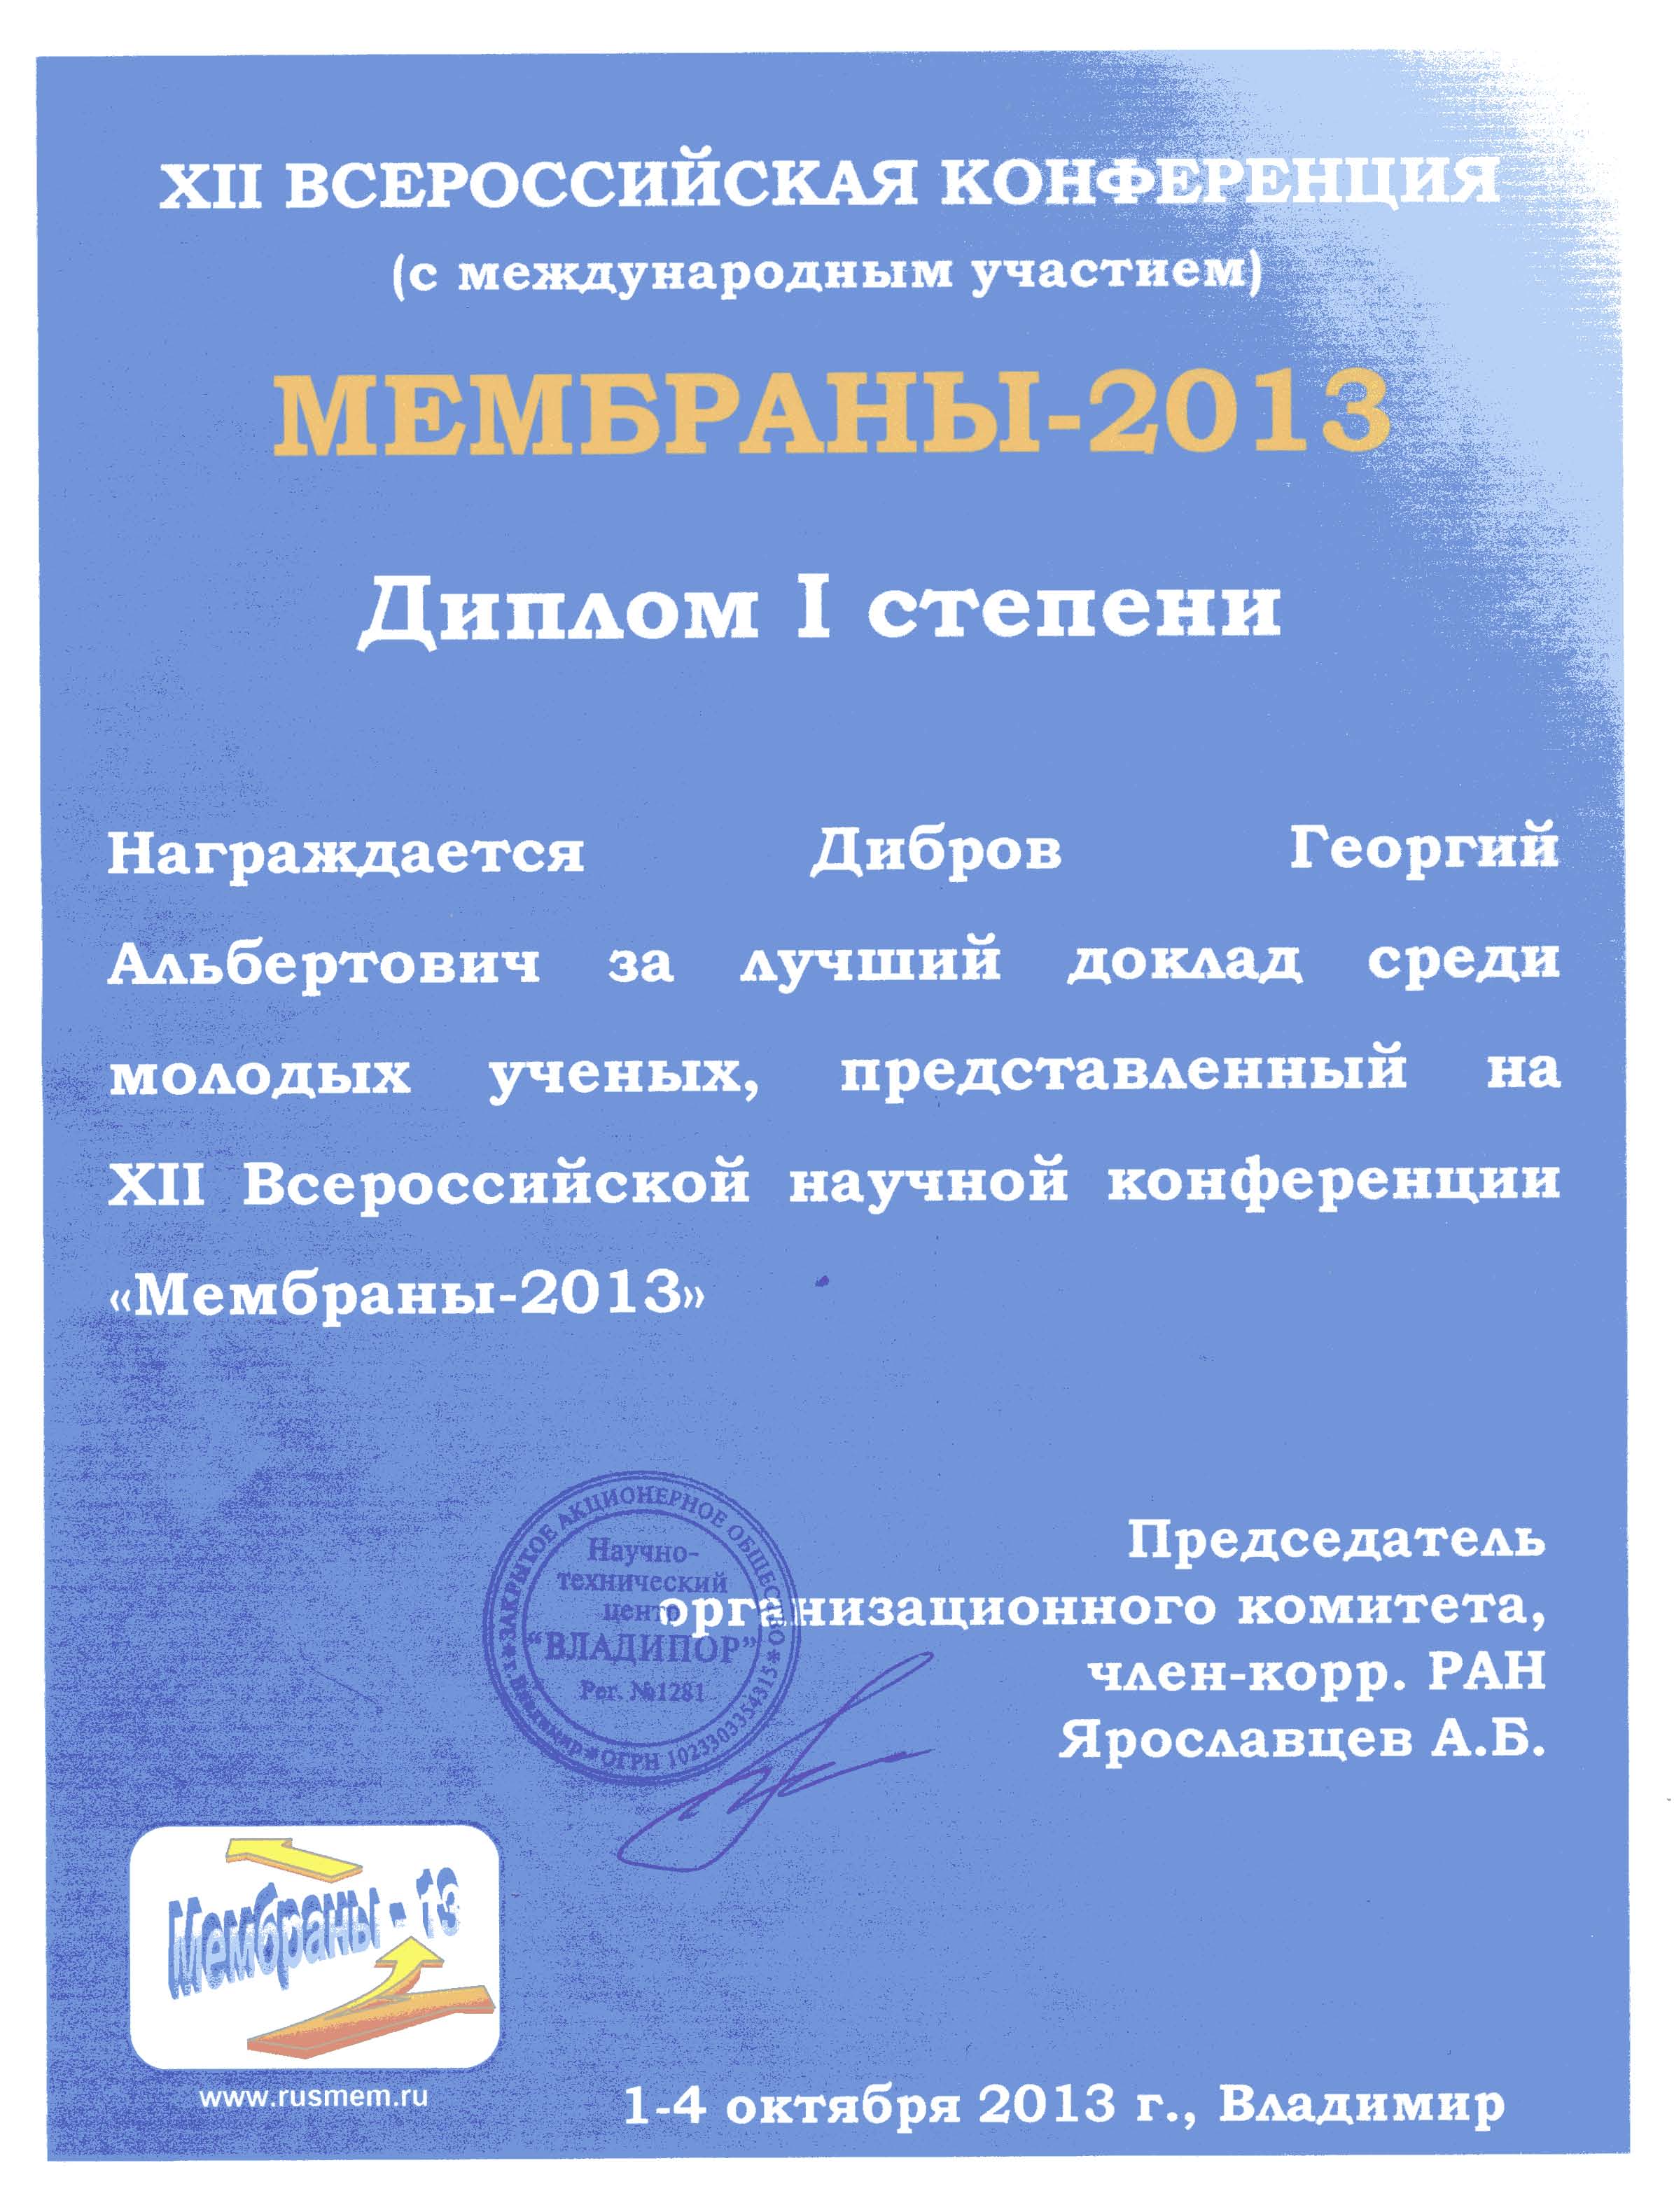 Диплом 1-й степени Диброву Г.А за лучший доклад среди молодых учёных представленный на XII Всероссийской научной конференции «Мембраны 2013».